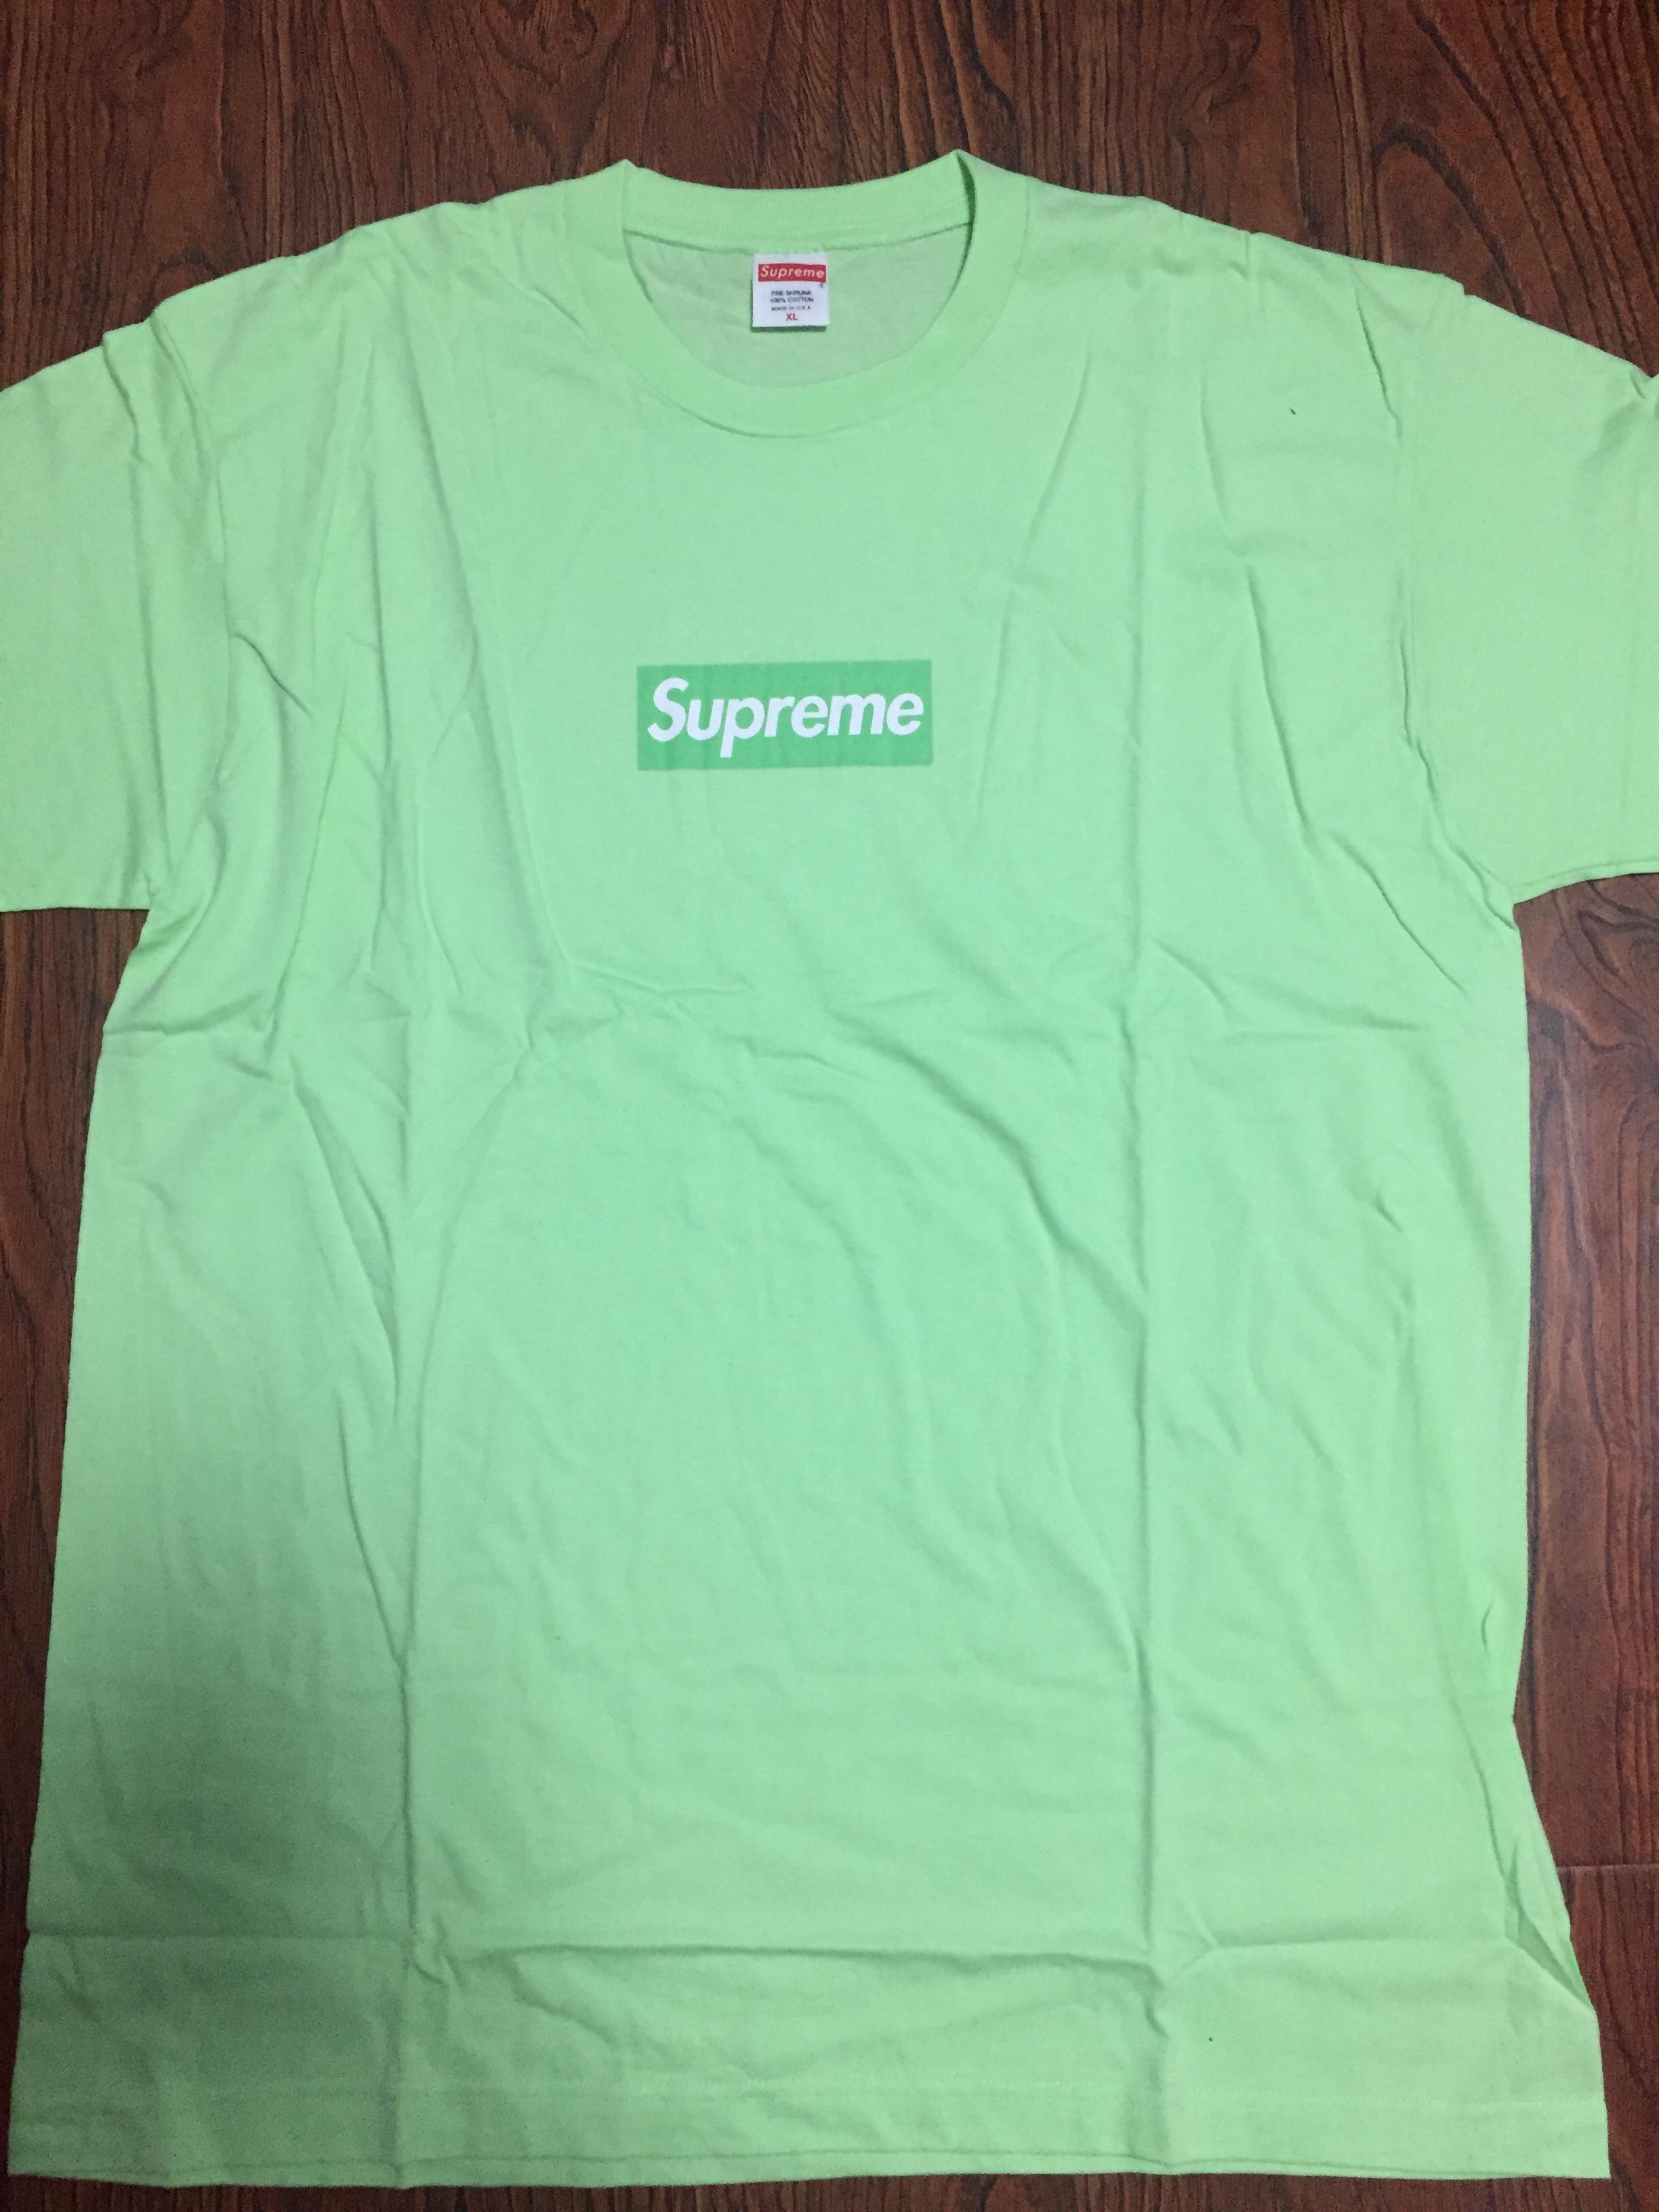 Green Supreme Logo - QC] Supreme Green Apple Box Logo T-Shirt from TrendyClub : FashionReps